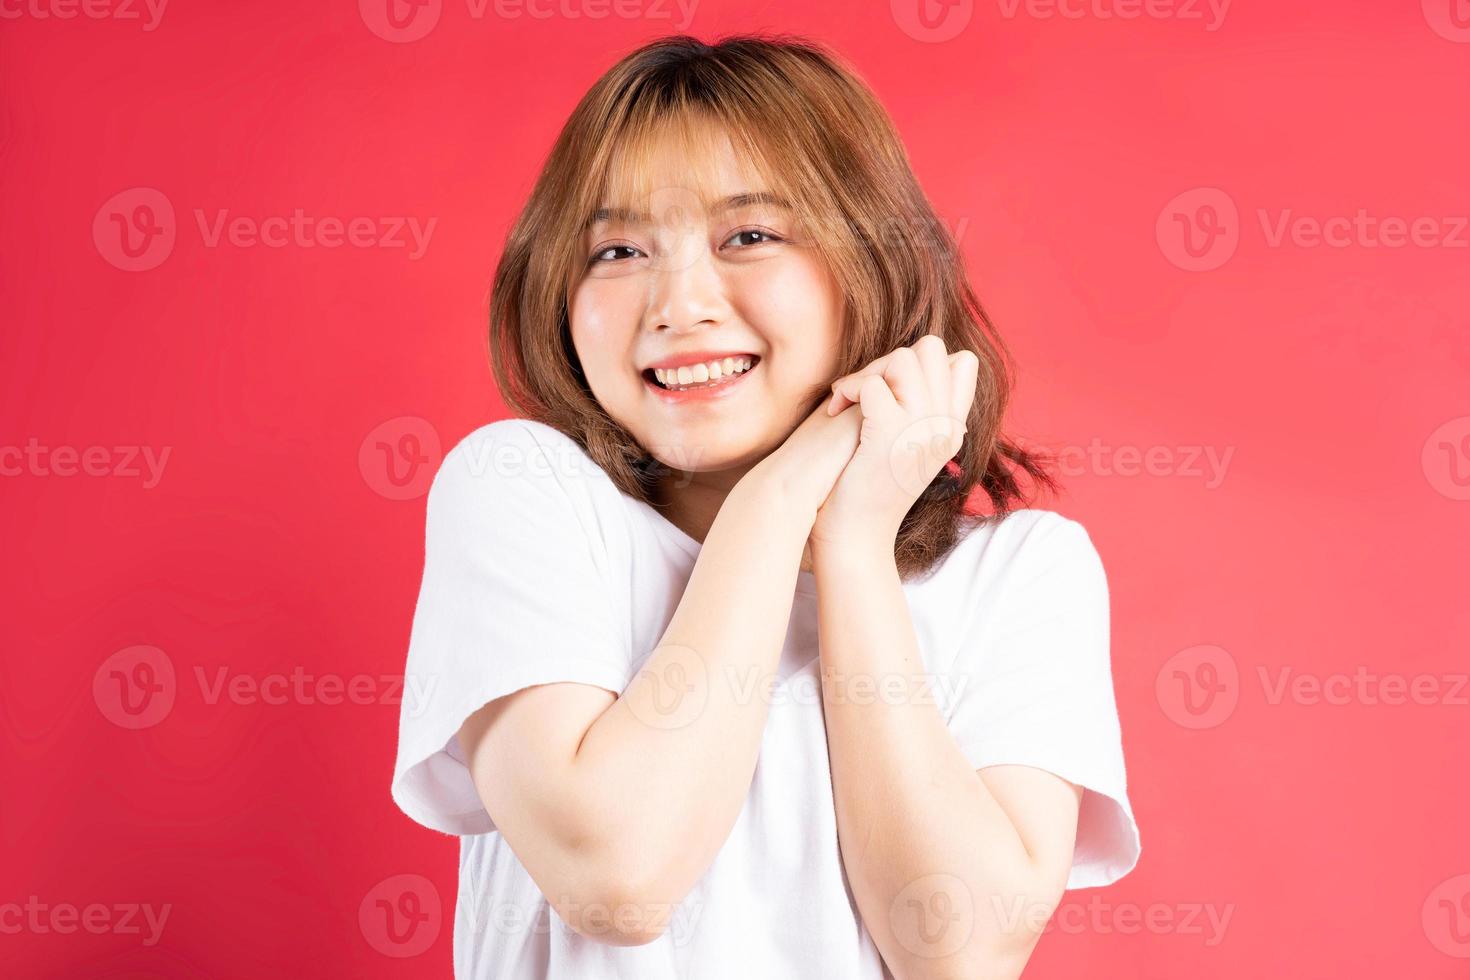 jovem garota asiática com gestos e expressões alegres no fundo foto